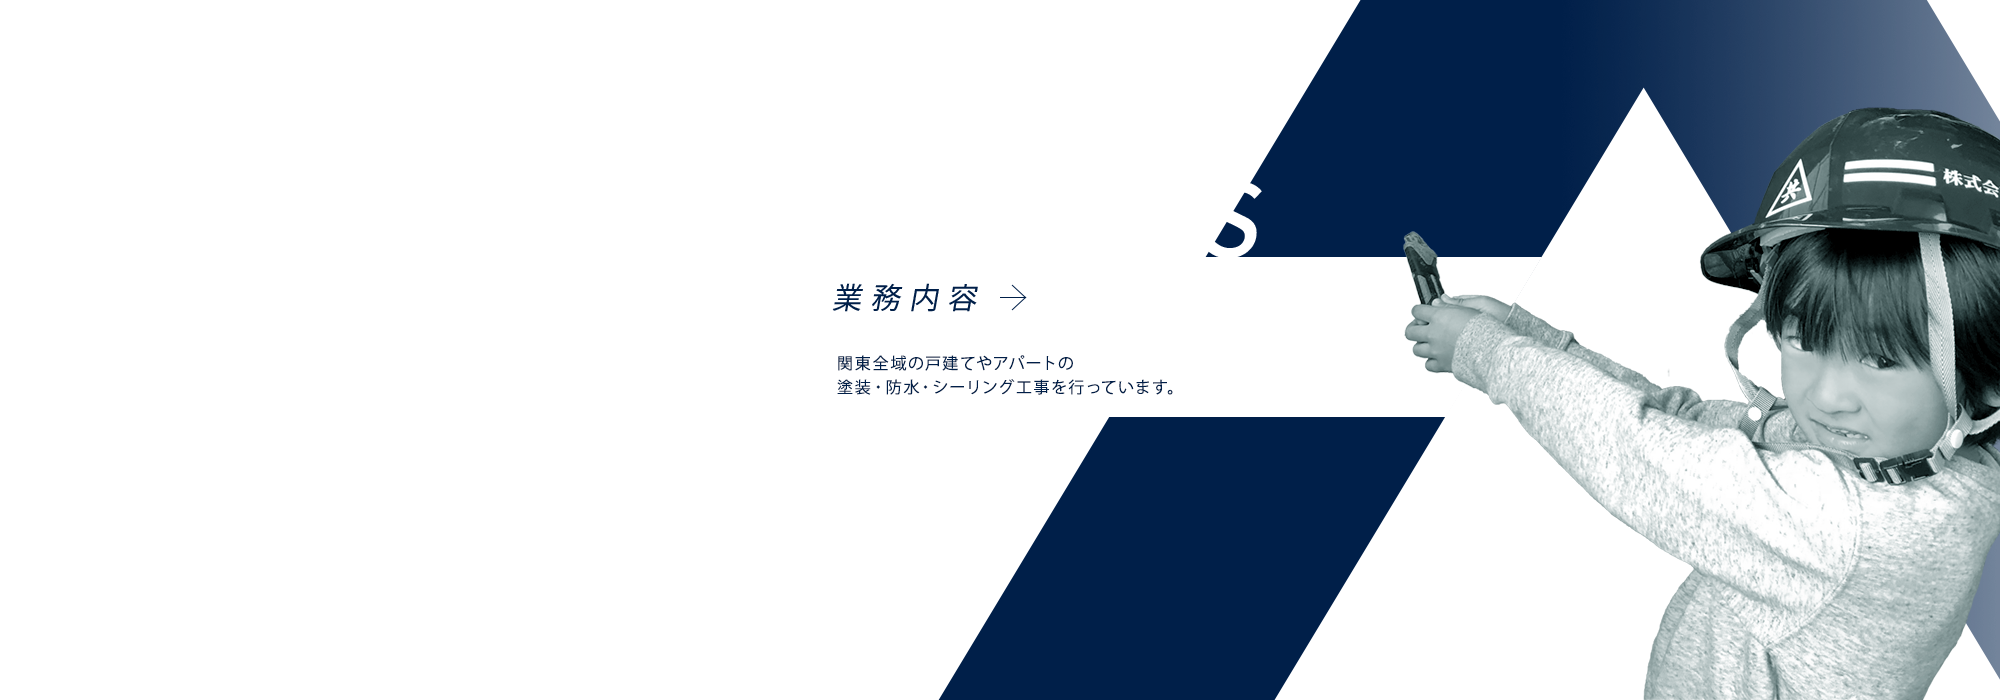 banner_business_full_bg